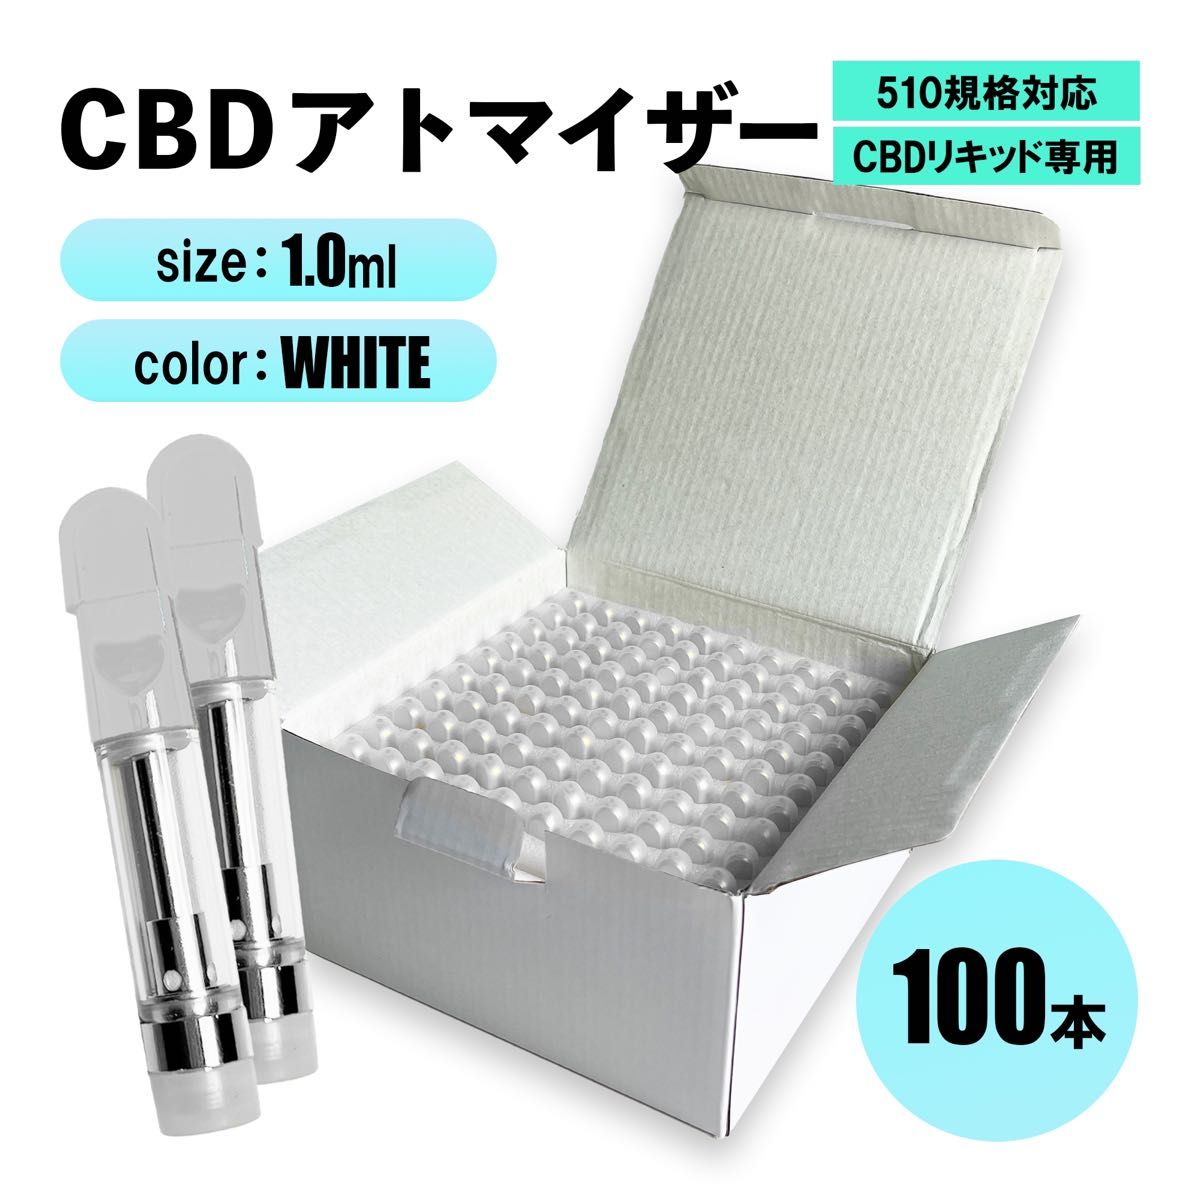 CBD アトマイザー 白 0.8ml 300本-